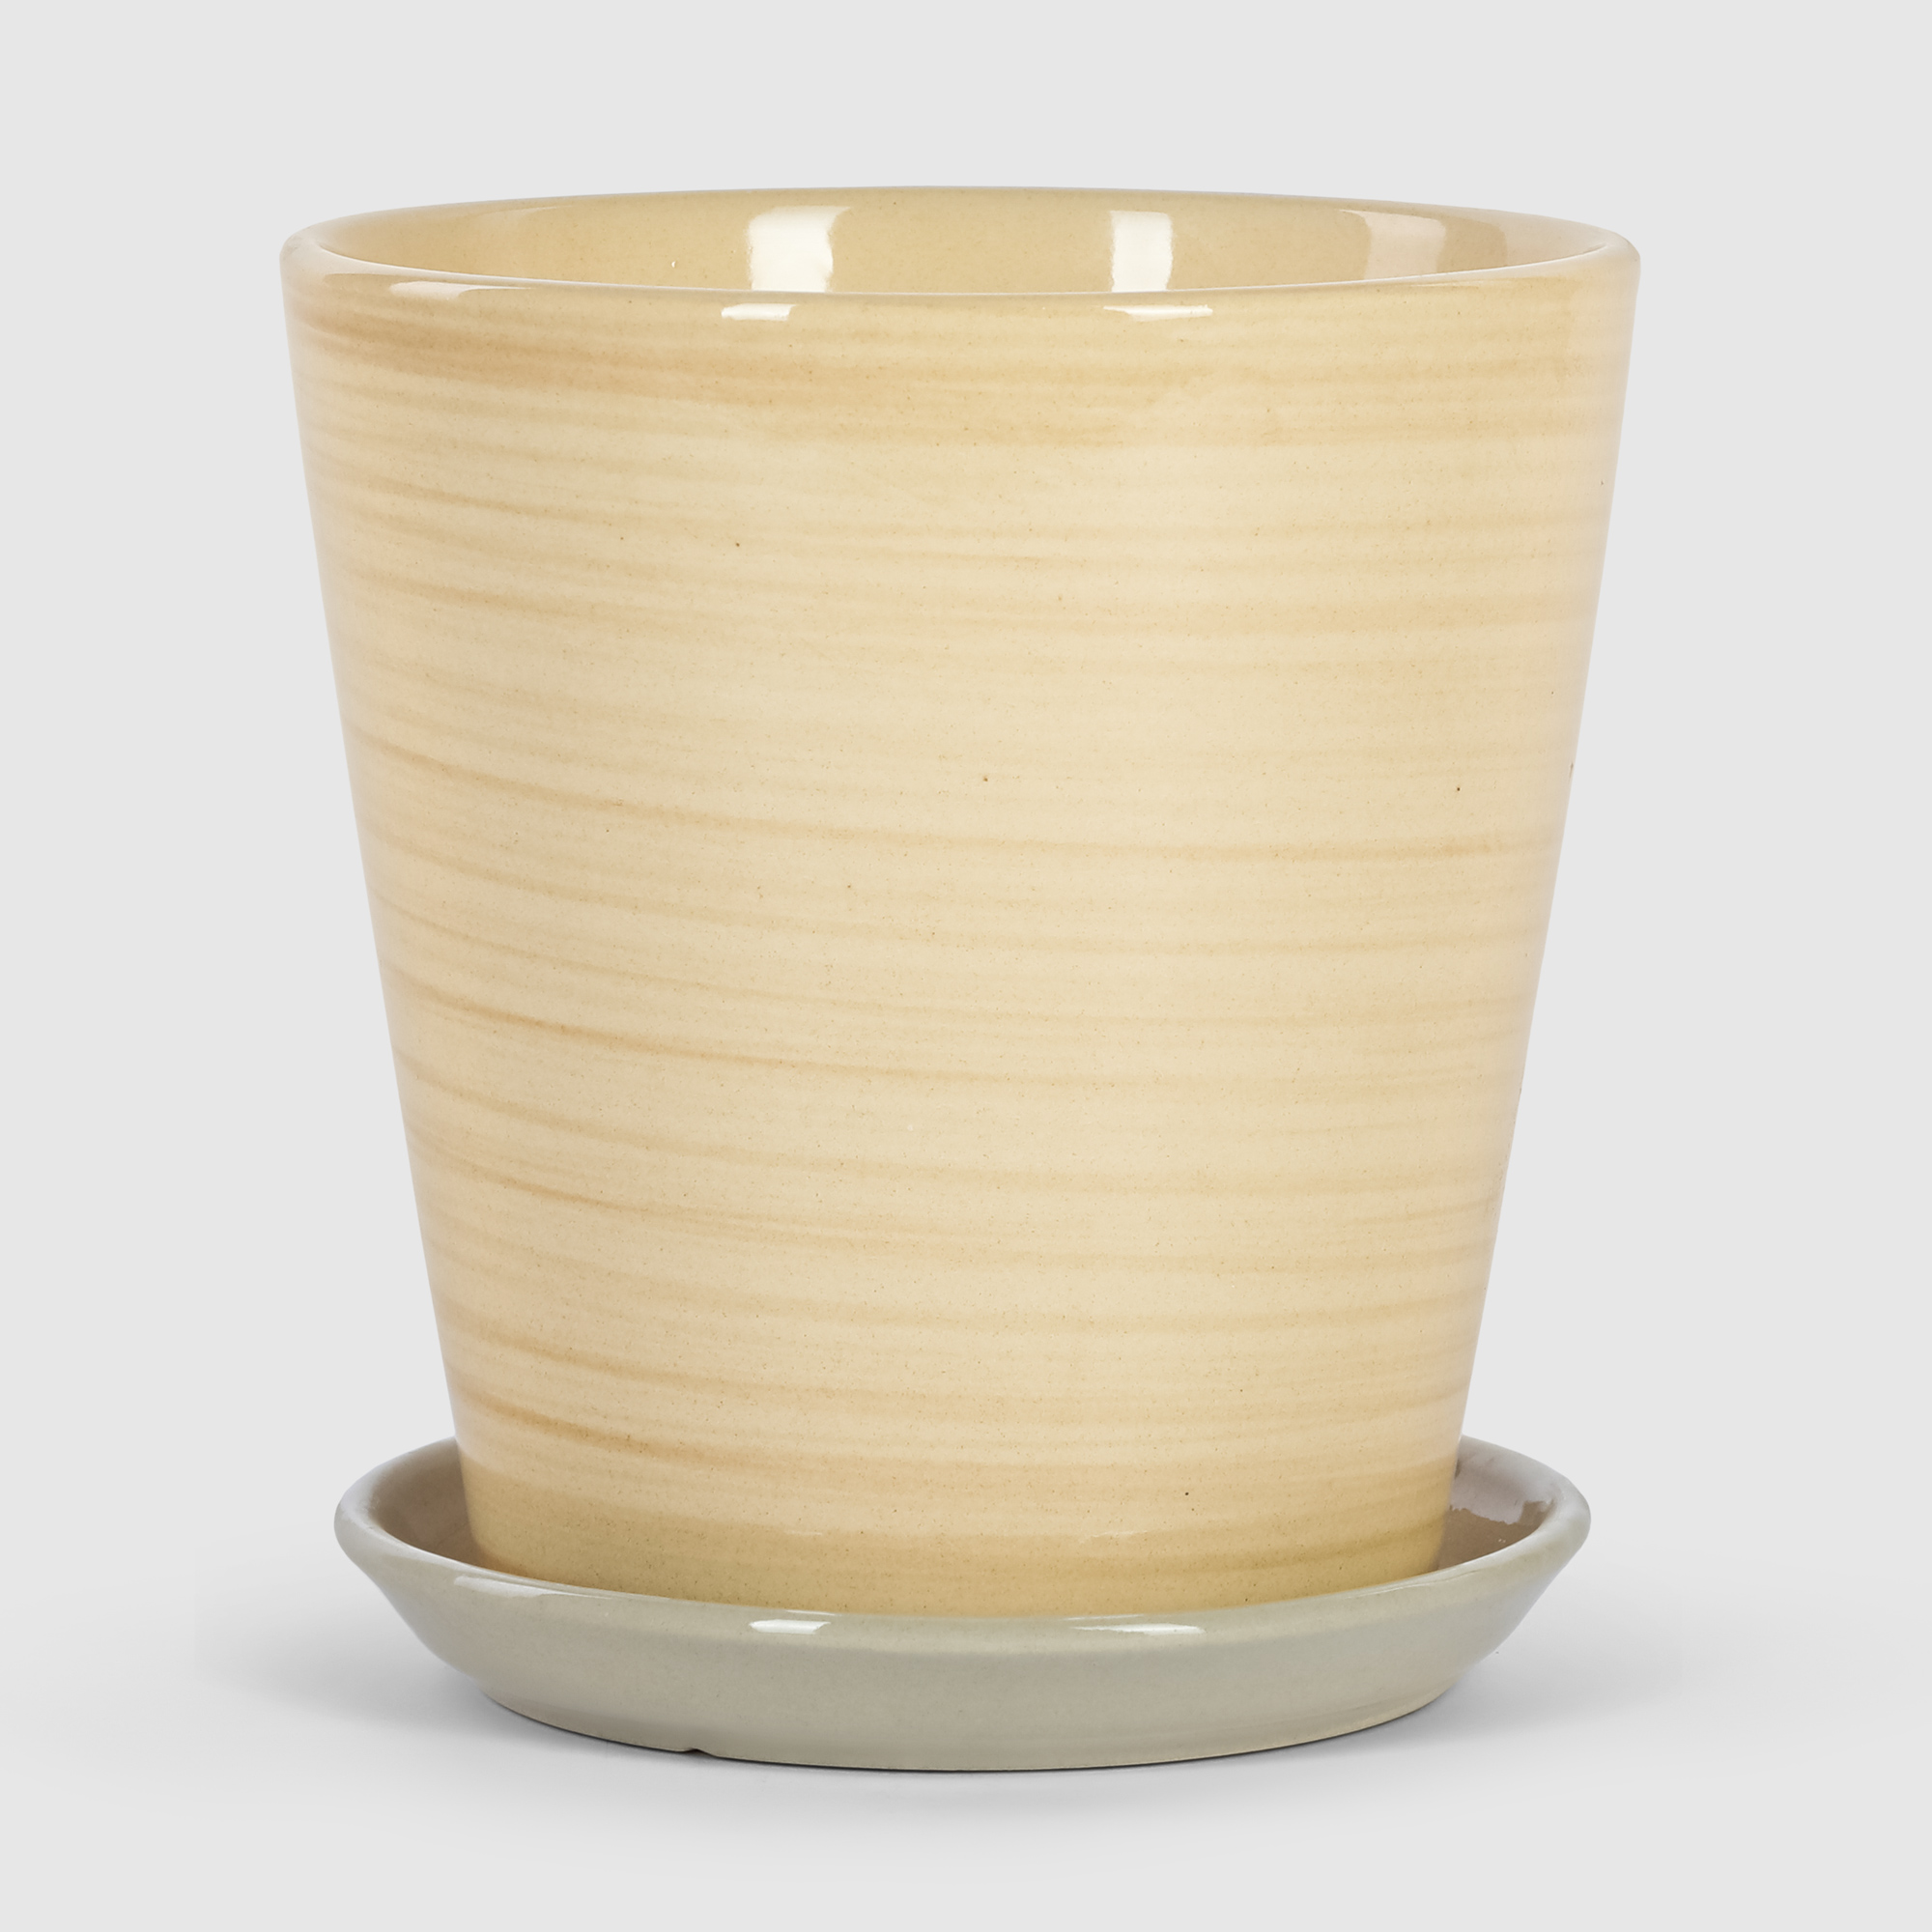 Кашпо керамическое для цветов Shine Pots 13x15см бежевое полосатое кашпо керамическое для ов shine pots 20x20см бежевое полосатое